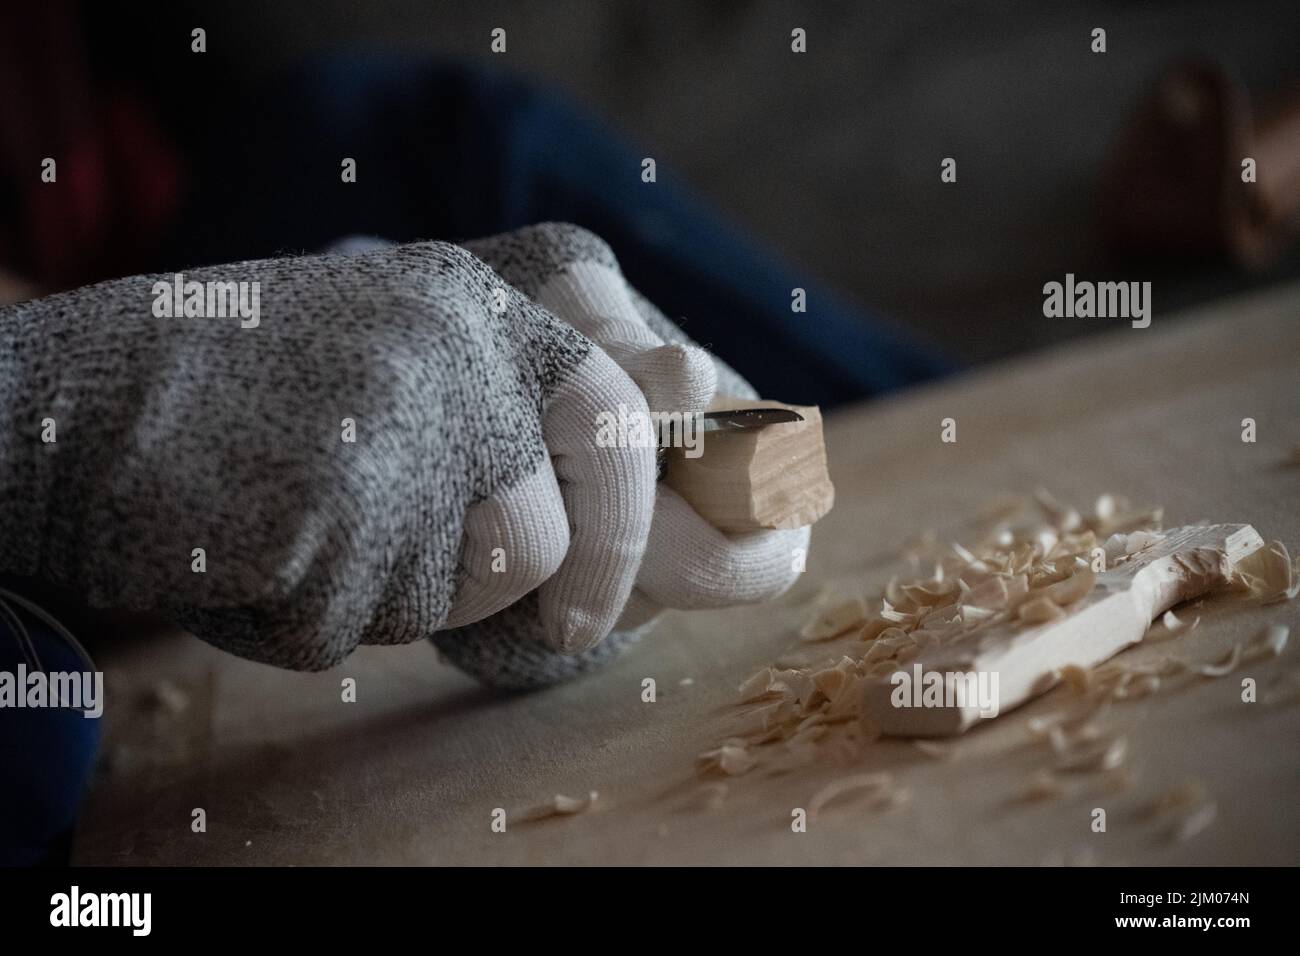 Primo piano di una persona che intagliava il legno con un coltello mentre indossava i guanti Foto Stock